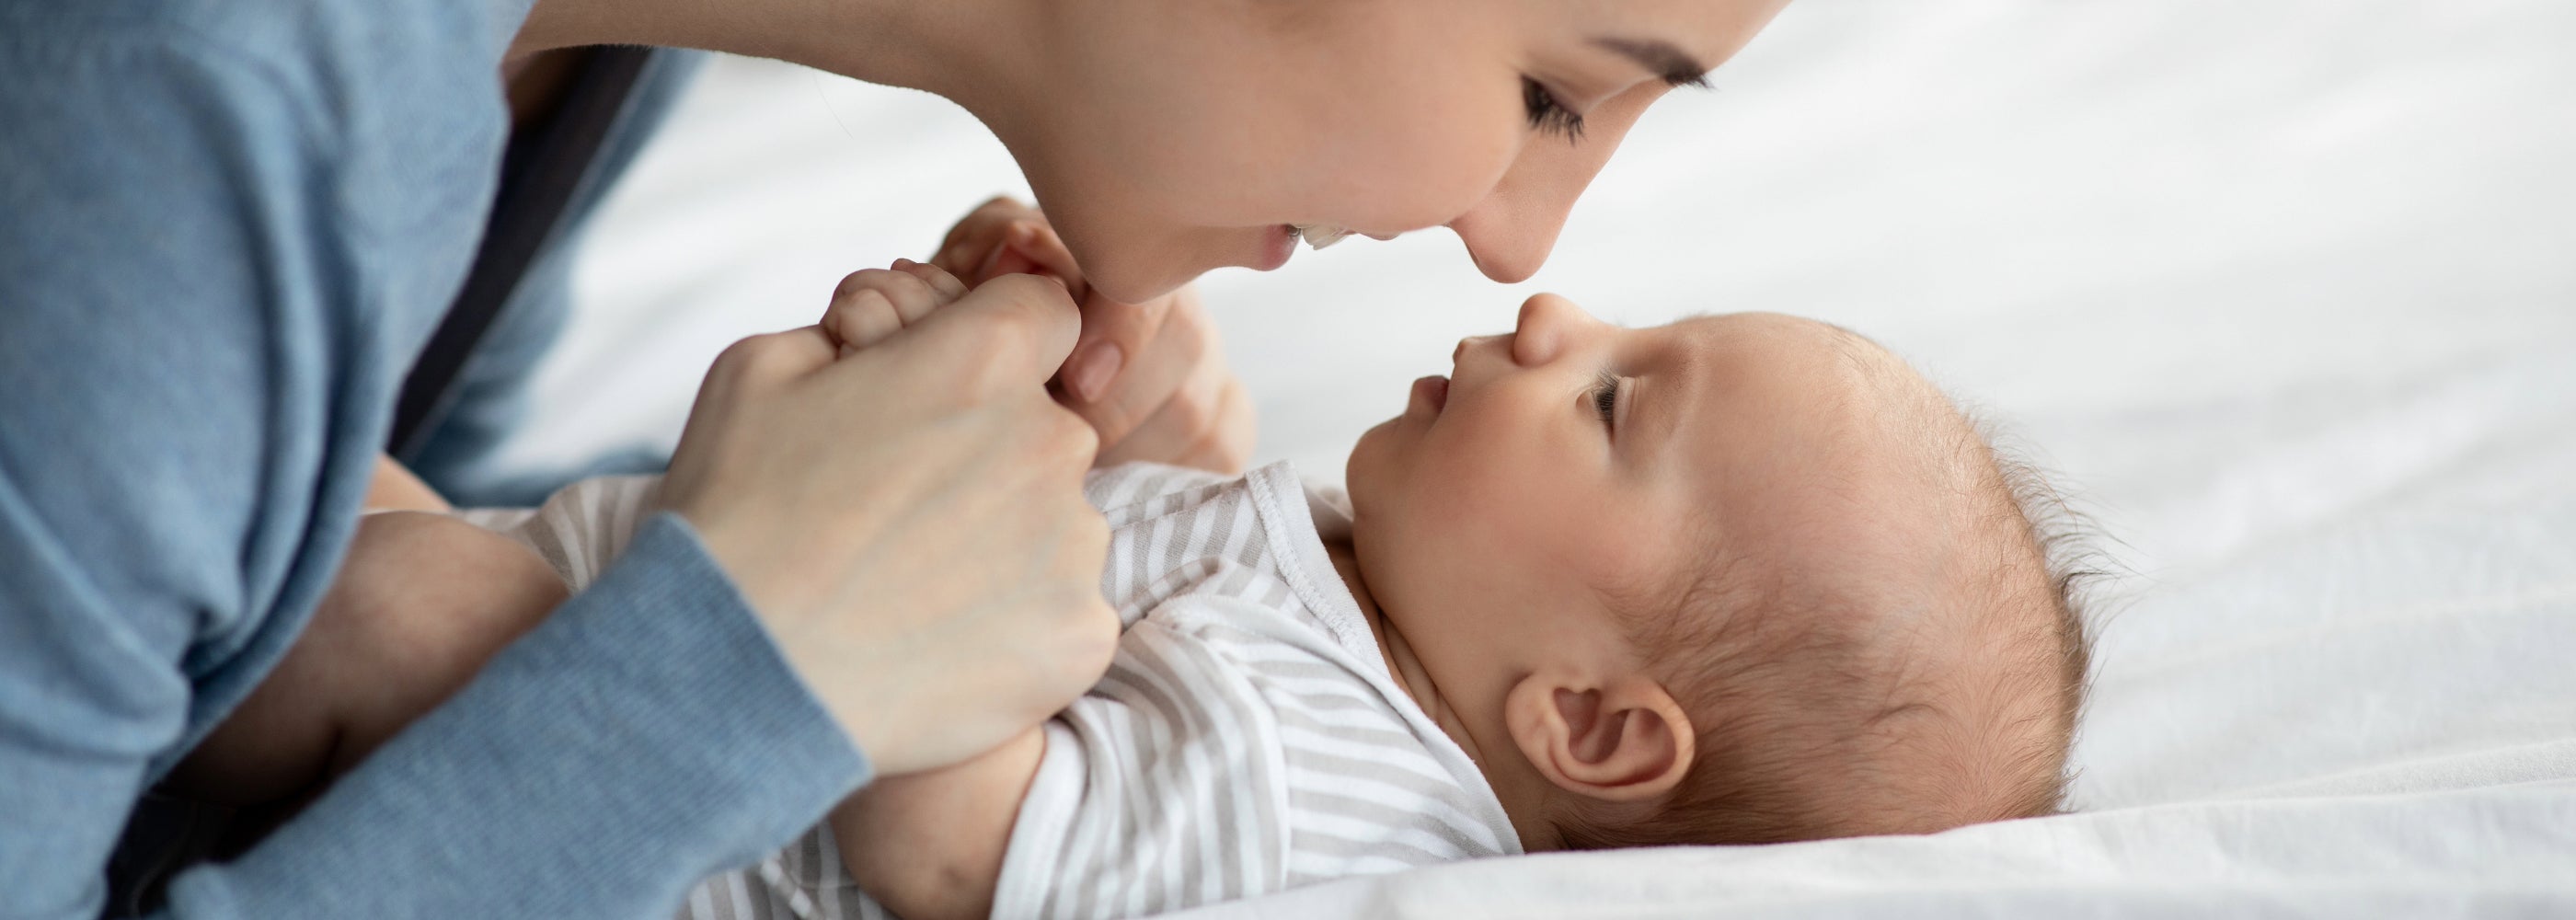 Plan incliné anti-reflux pour bébé : à quoi ça sert ? - Ecus Kids